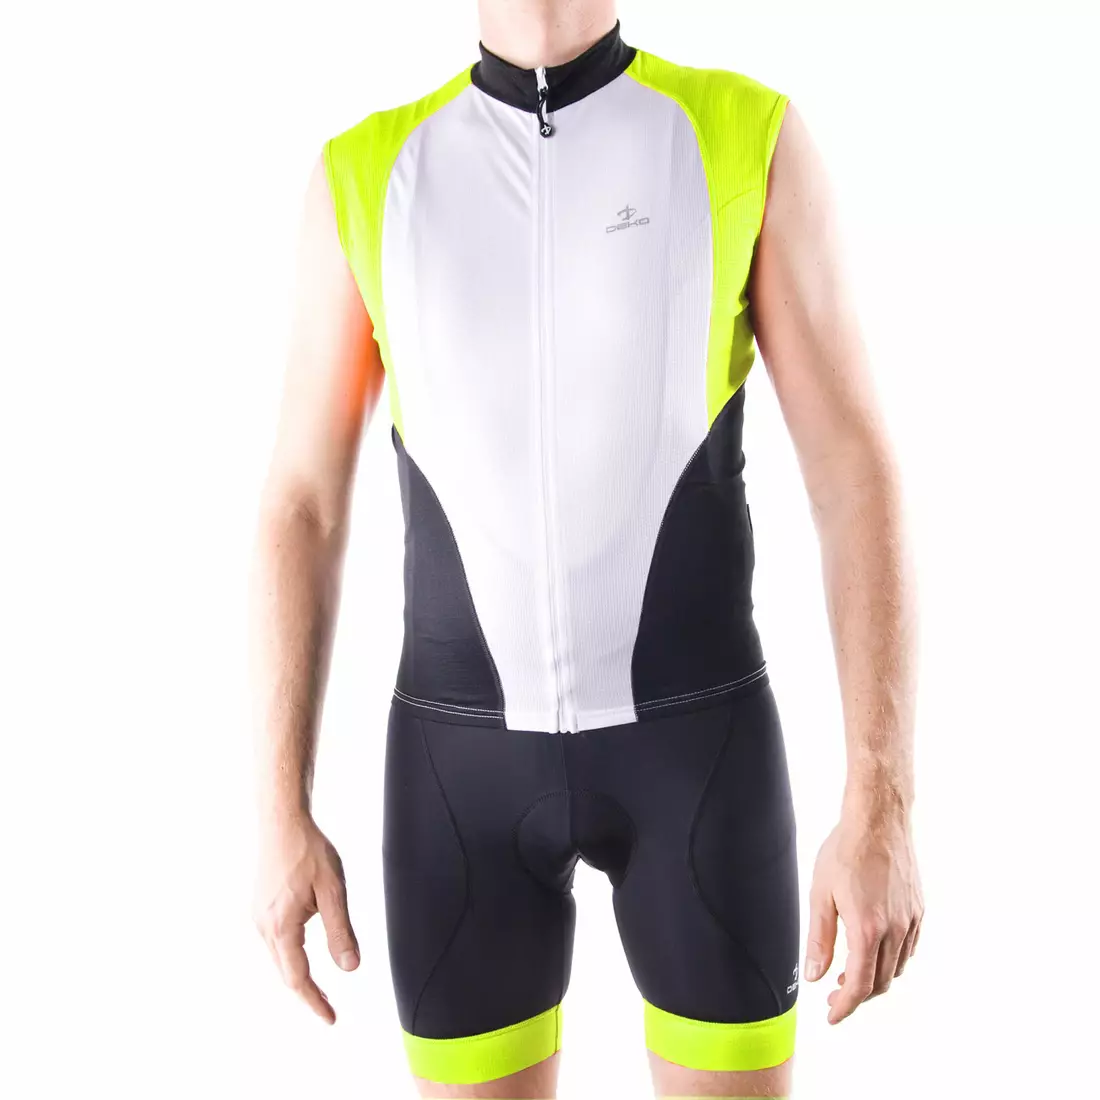 DEKO HAITI II pánsky cyklistický dres bez rukávov, bielo-fluór